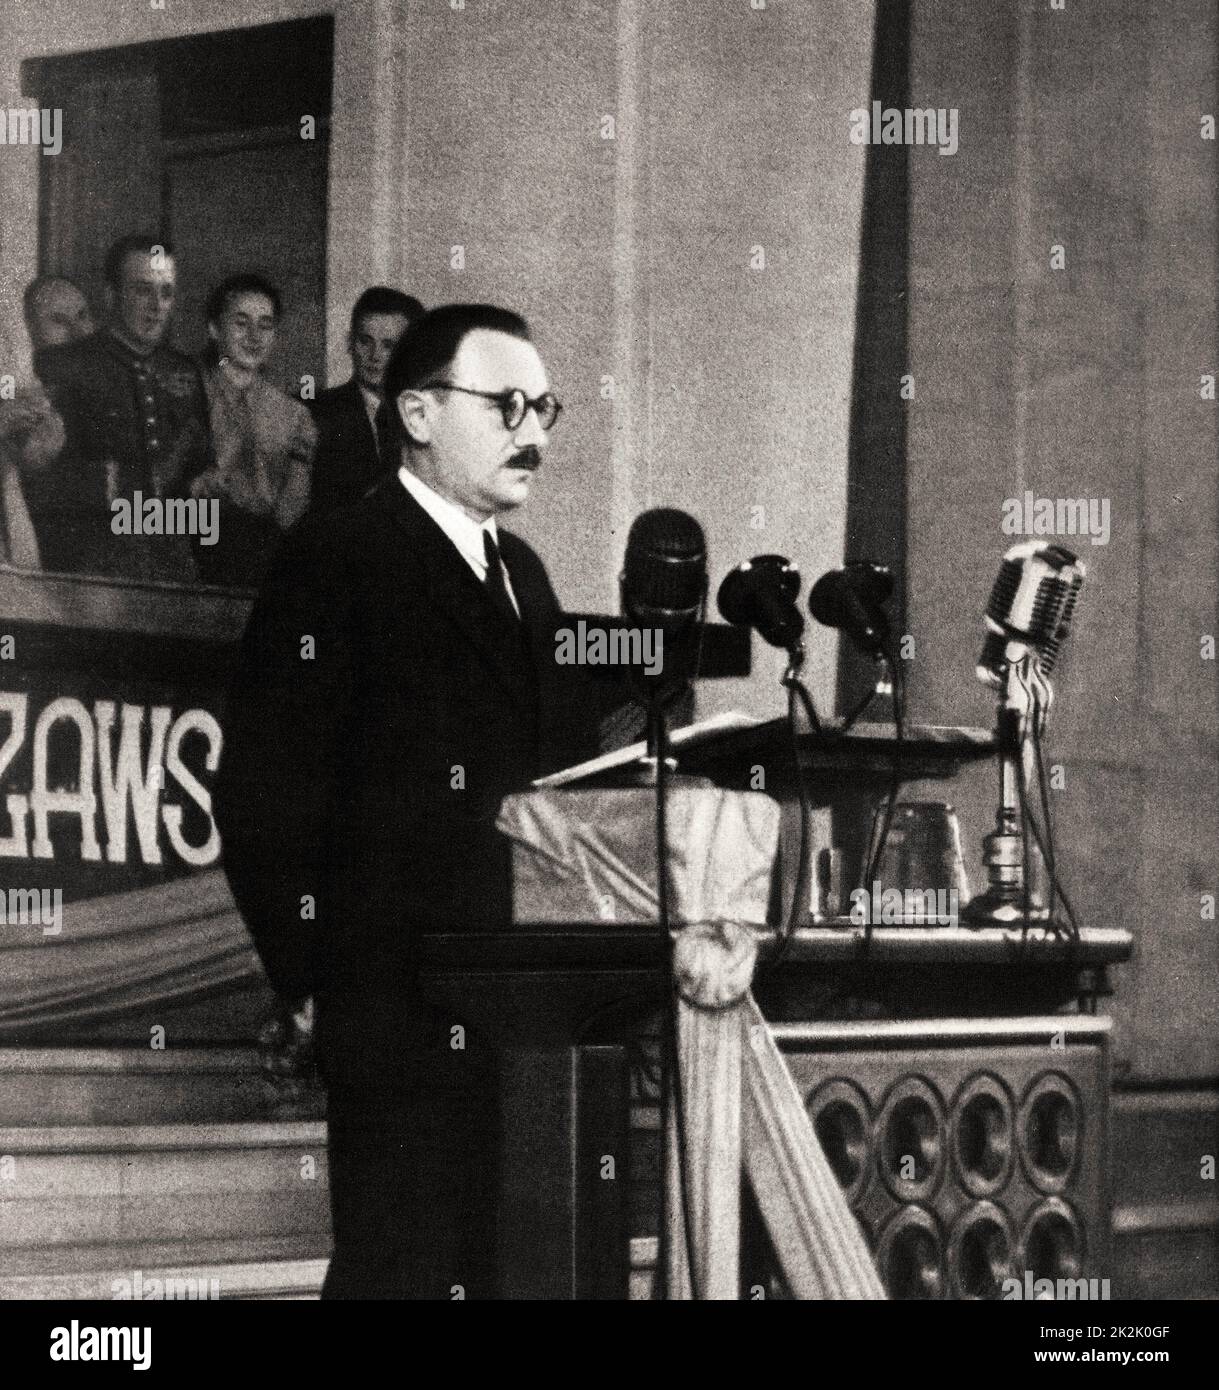 Boleslaw Bierut 1892 - 1956. Dirigeant communiste polonais. Président de la Pologne 1947 – 1952 Banque D'Images